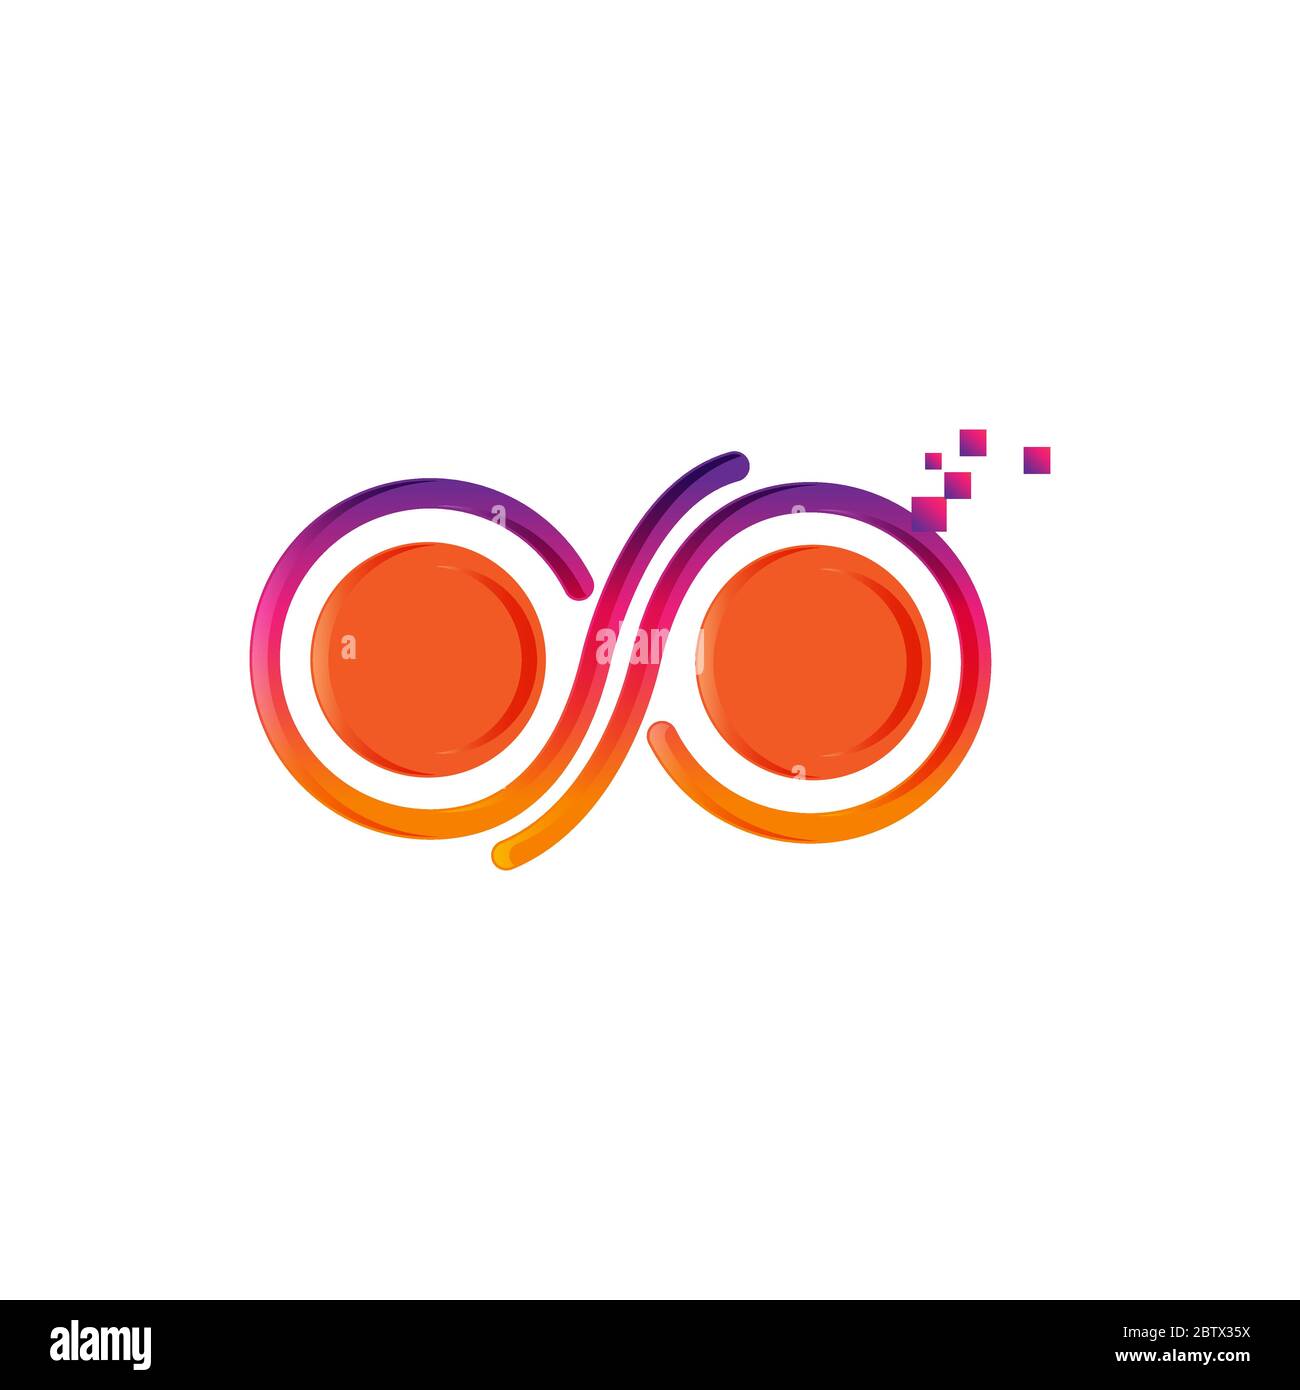 Infinity logo vector template, Creative Infinity logo design concept Stock Vector